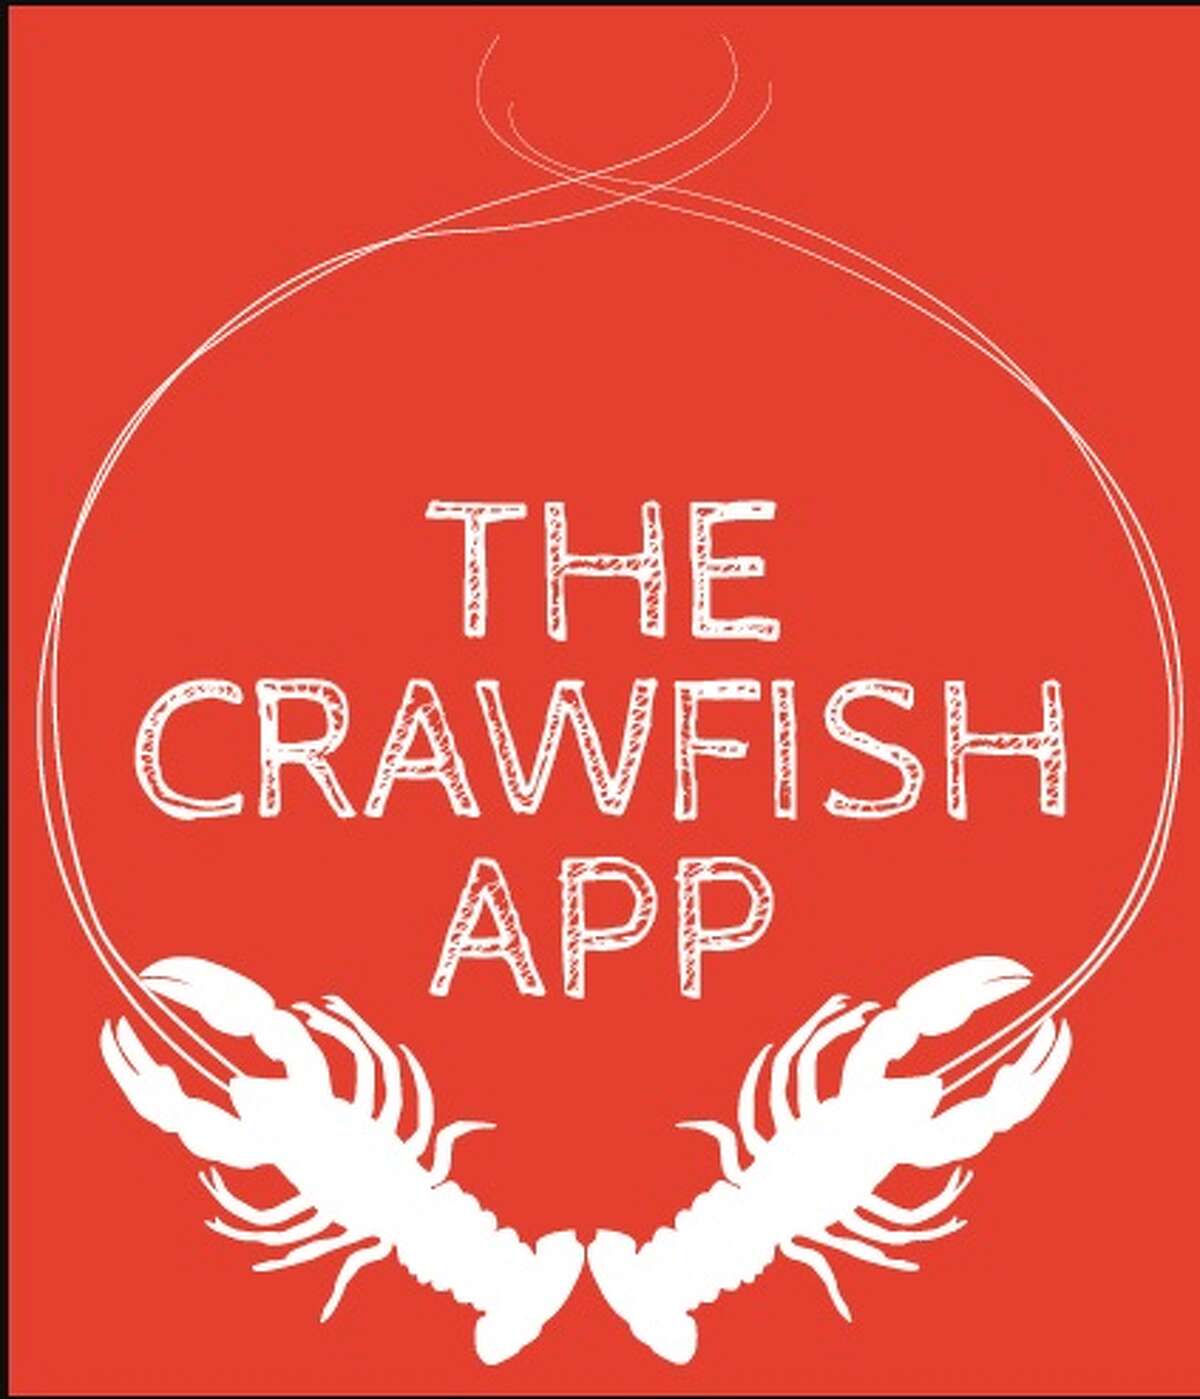 crawfish app